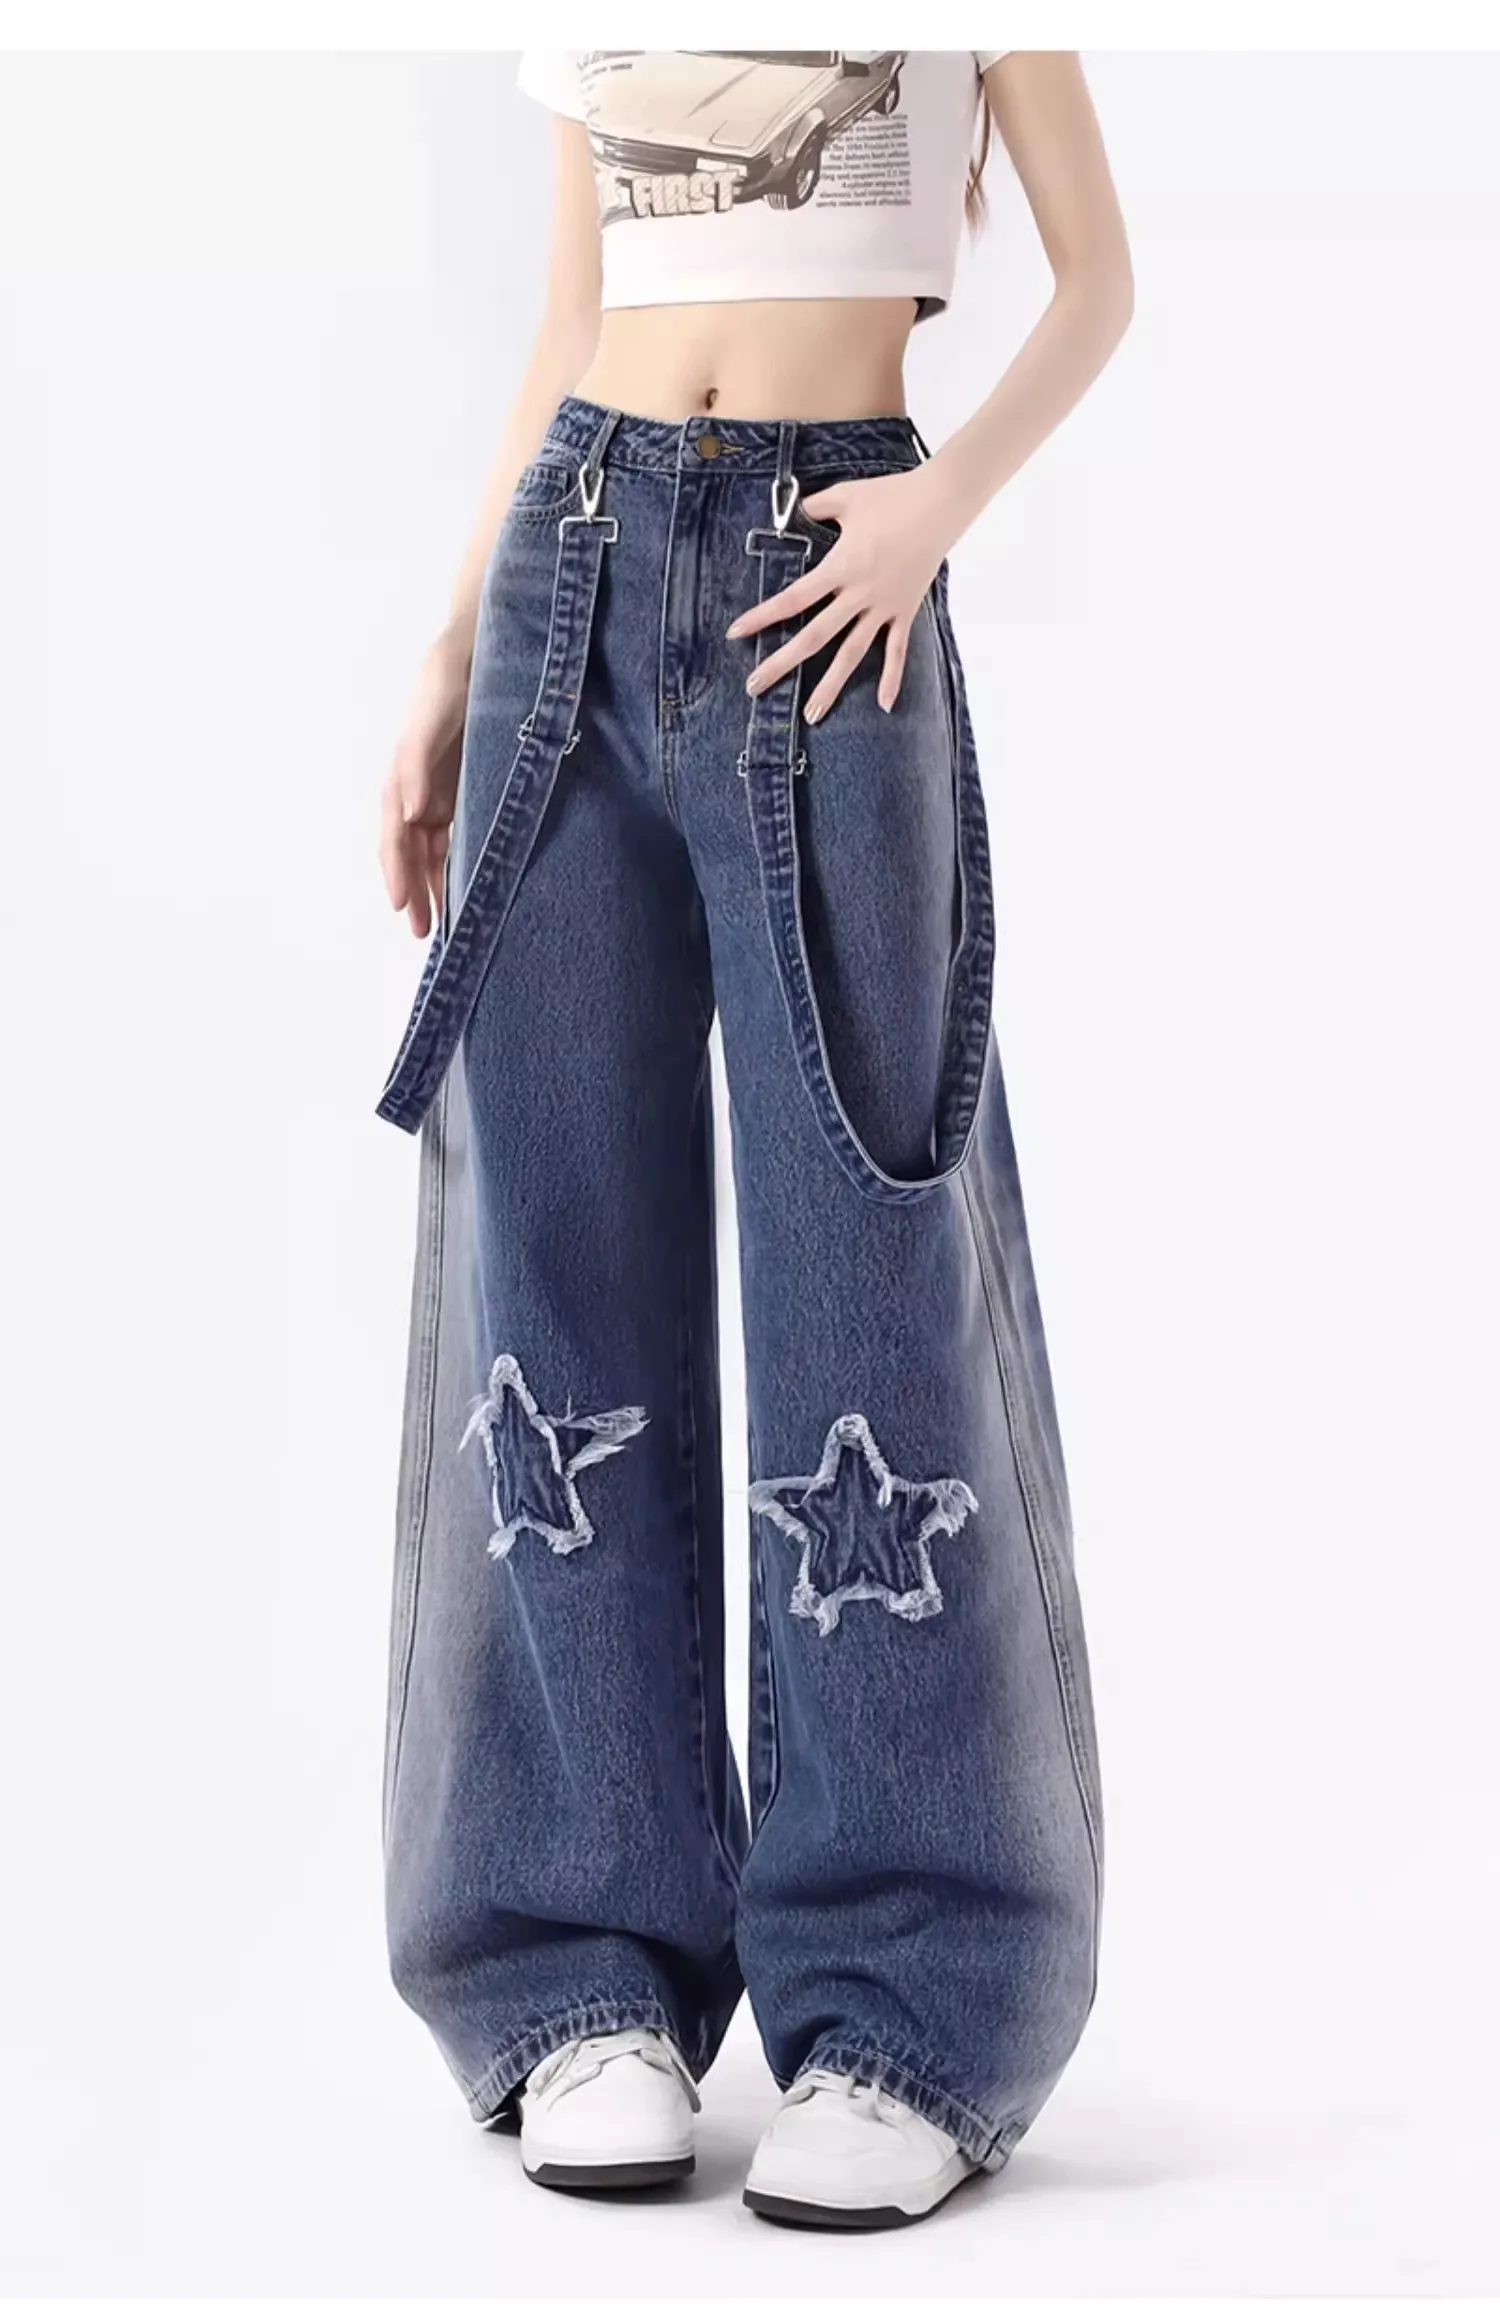 

Vintage High Waist Women Jeans Stars American Fashion Streetwear Wide Leg Jean Female Trouser Straight Baggy Denim Pants Y2K